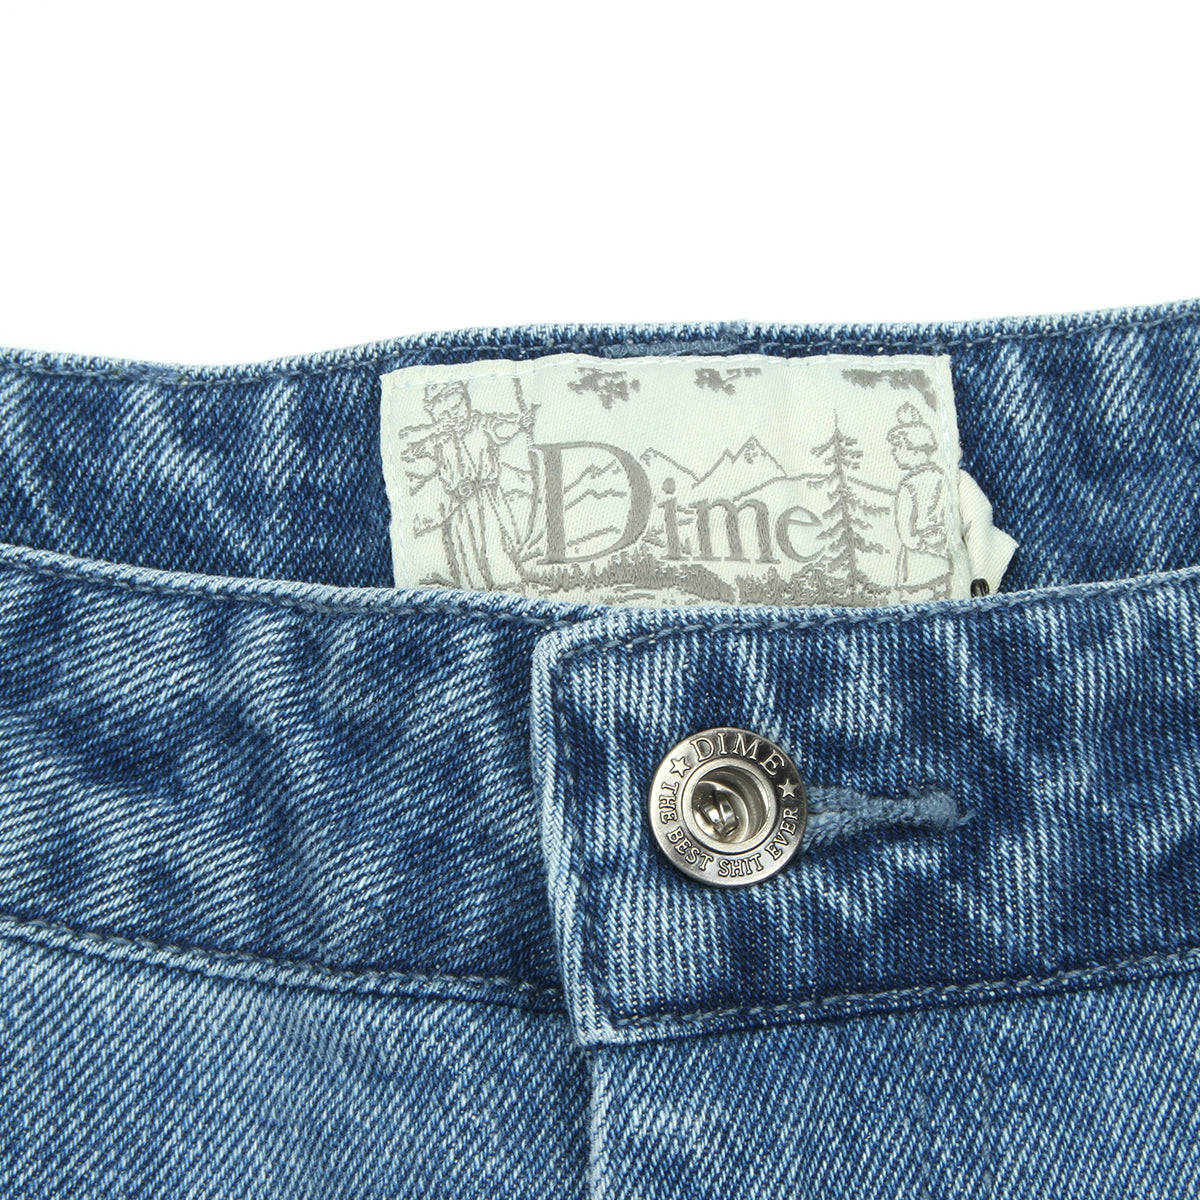 特別セーフ denim5 slacks pants カジュアルパンツ - www.marquet.nyc